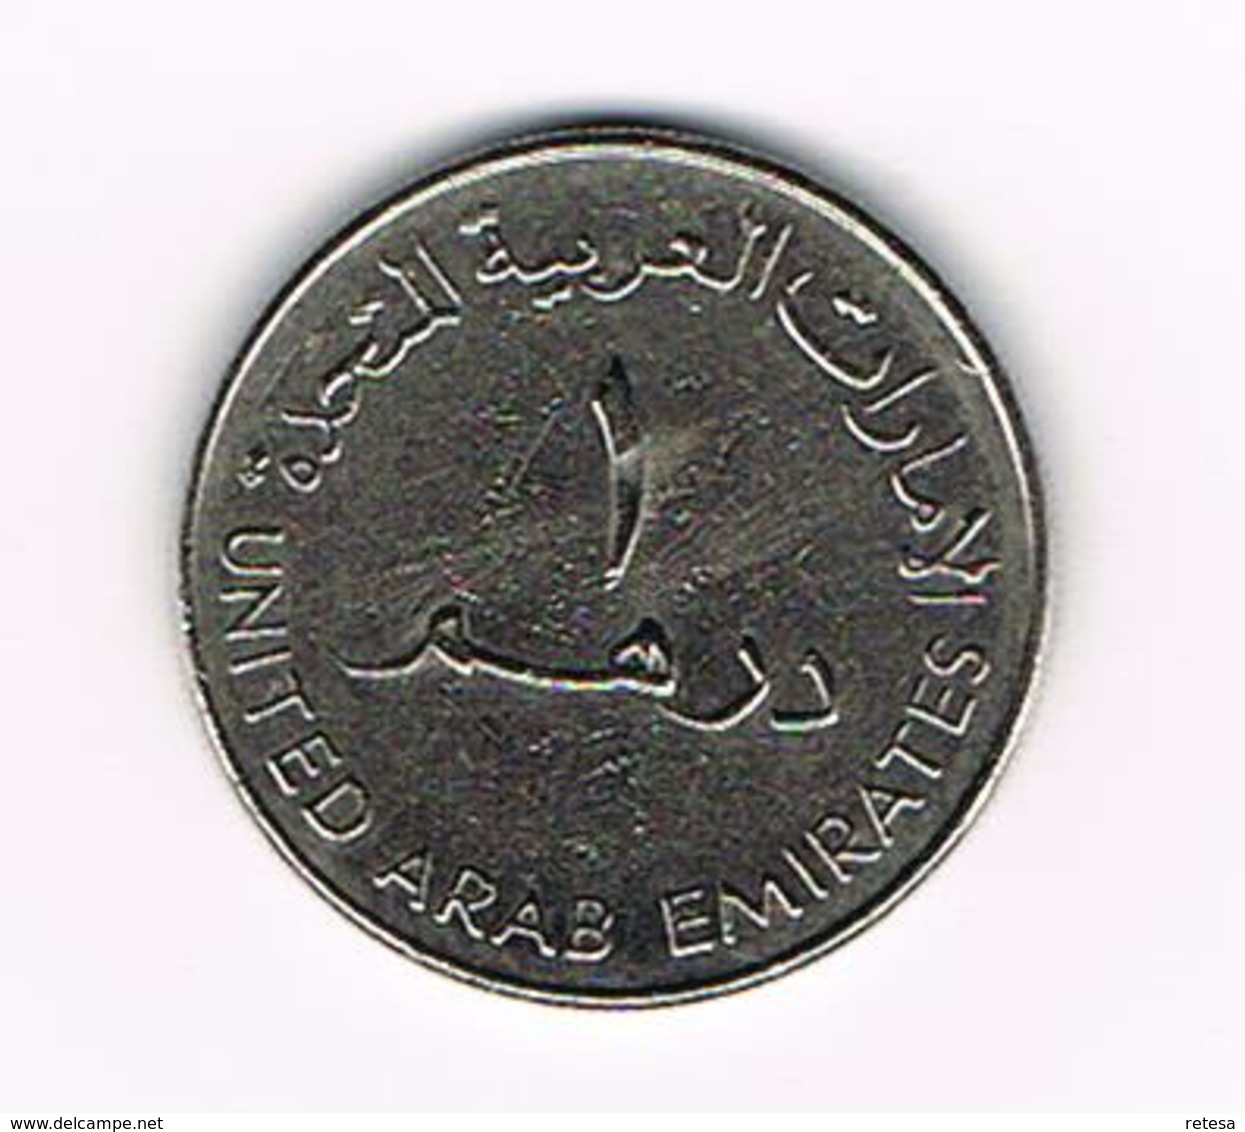 /  UNITED ARAB EMIRATES  1 DIRHAM 2005  REDUCED  SIZE - Verenigde Arabische Emiraten